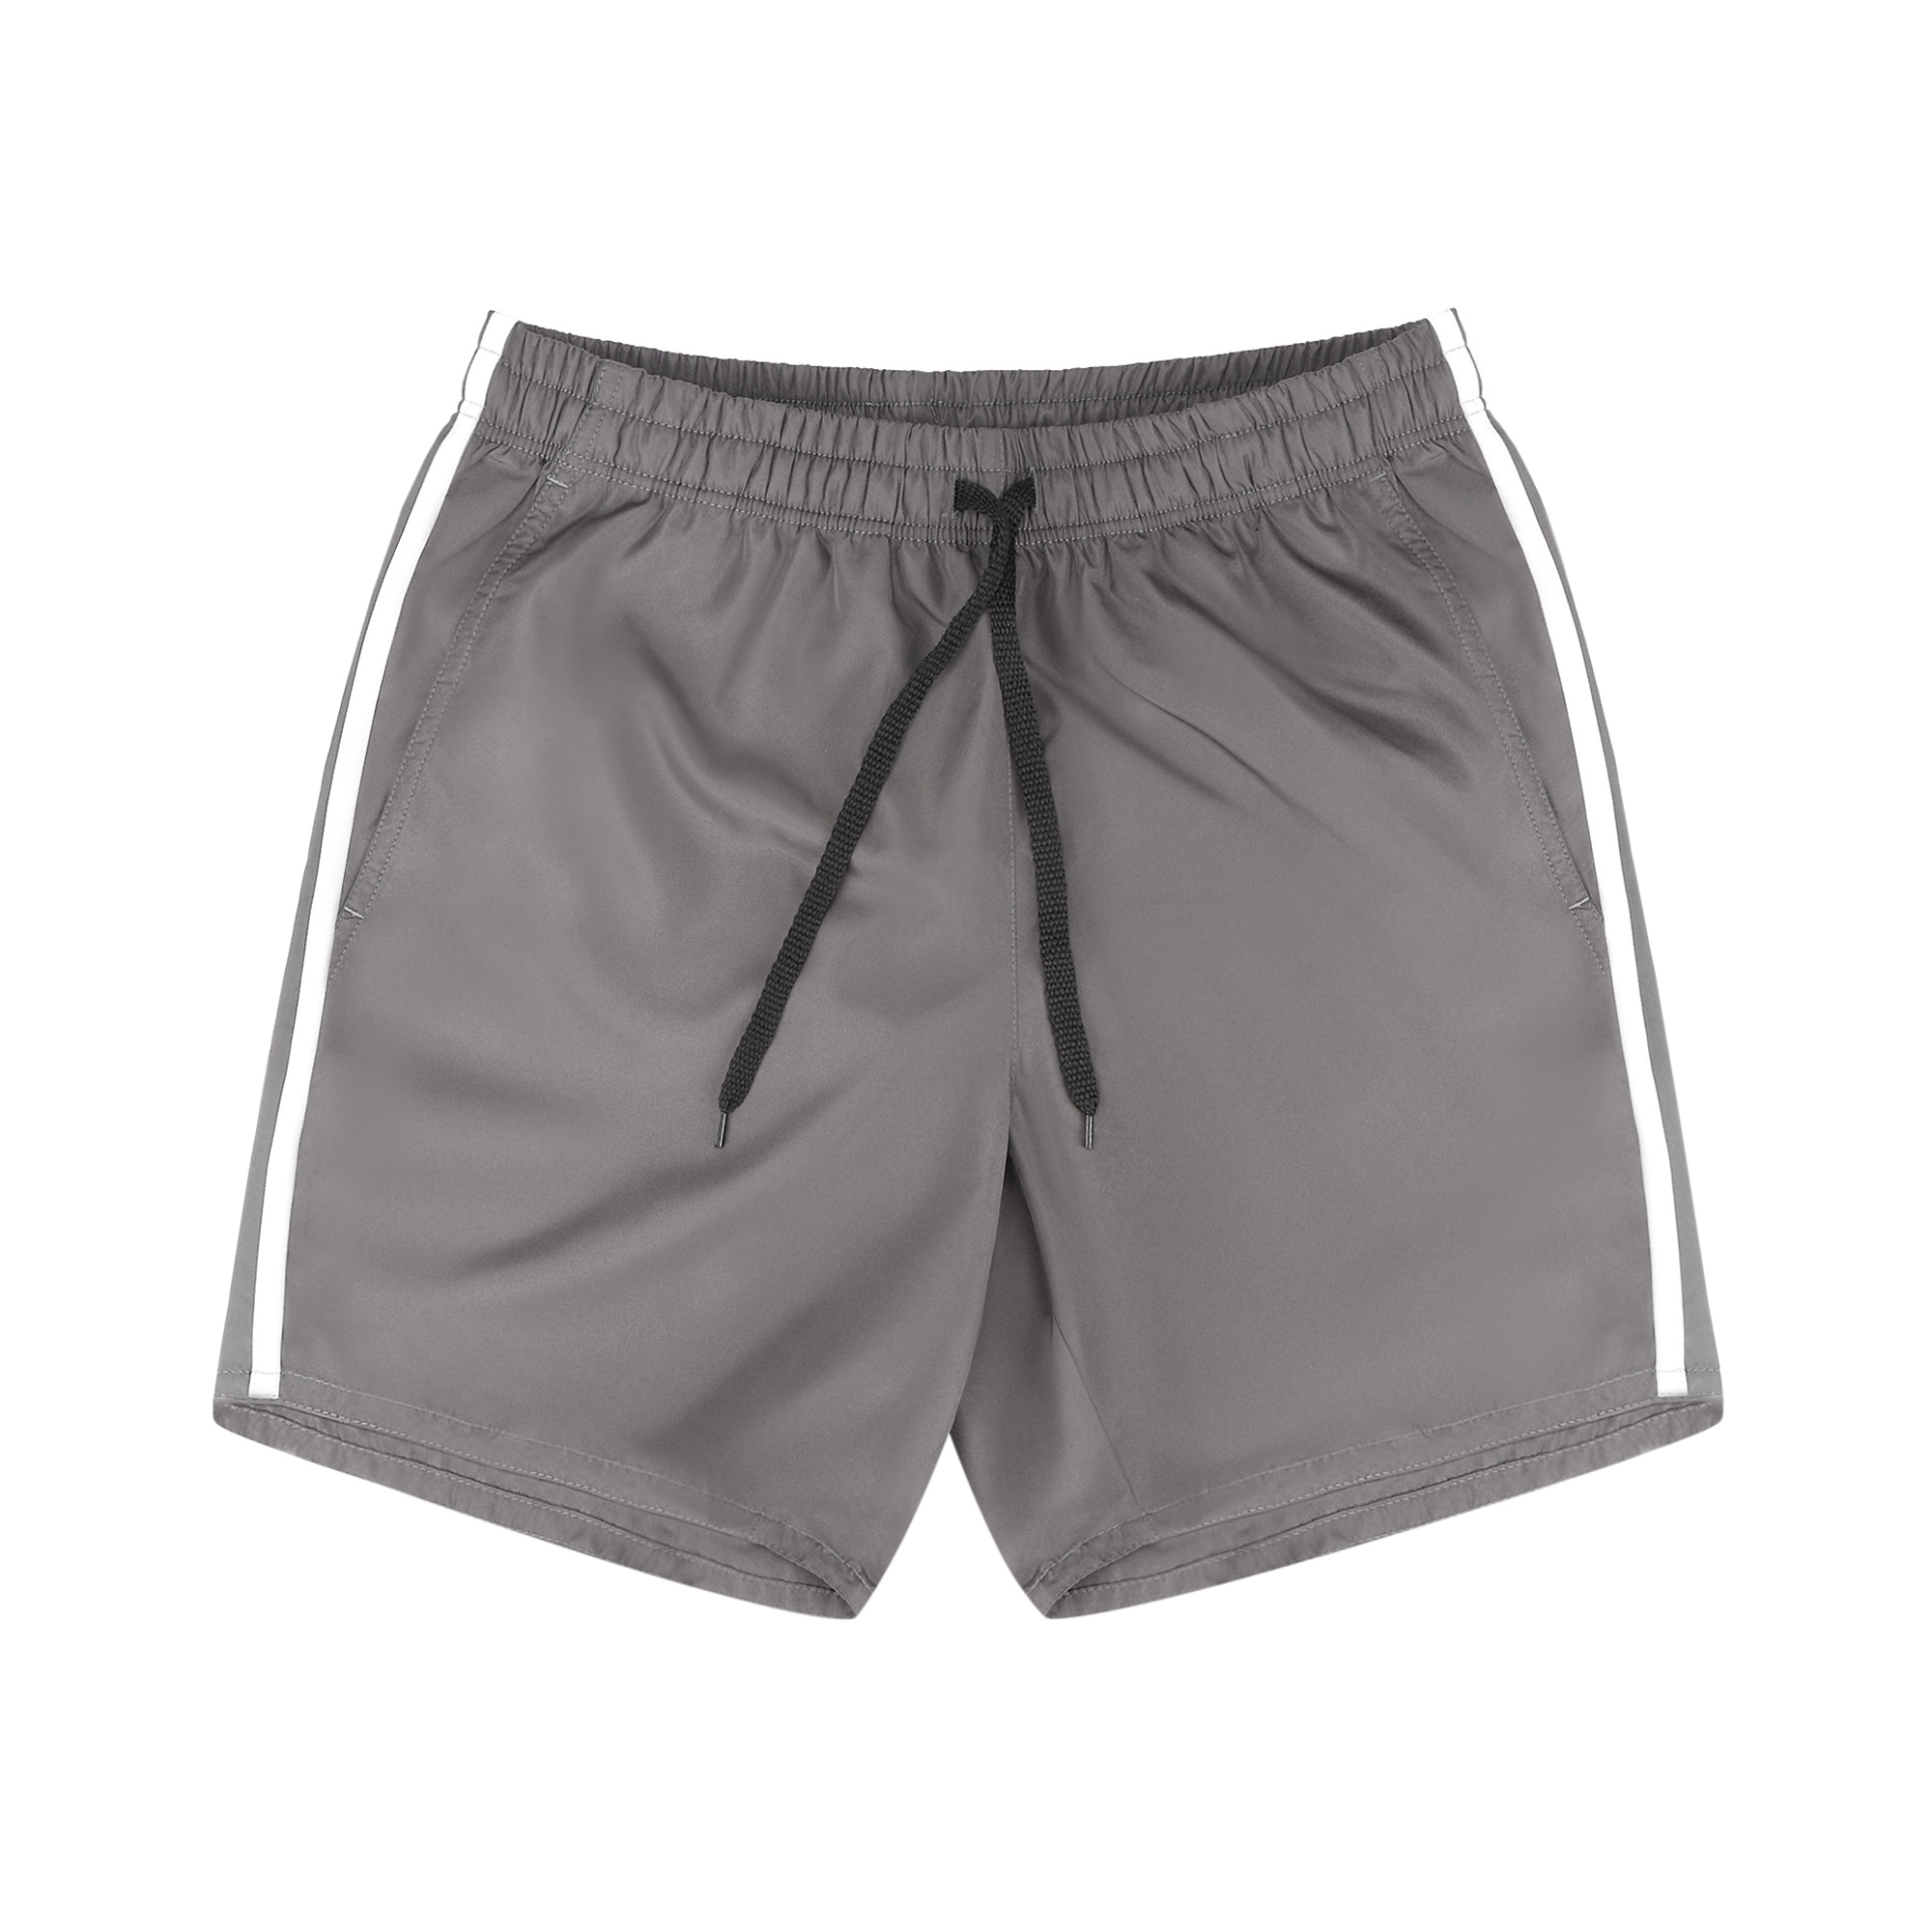 Мужские шорты пляжные Pantelemone PH-114 темно-серые 54, цвет темно-серый, размер 54 - фото 1